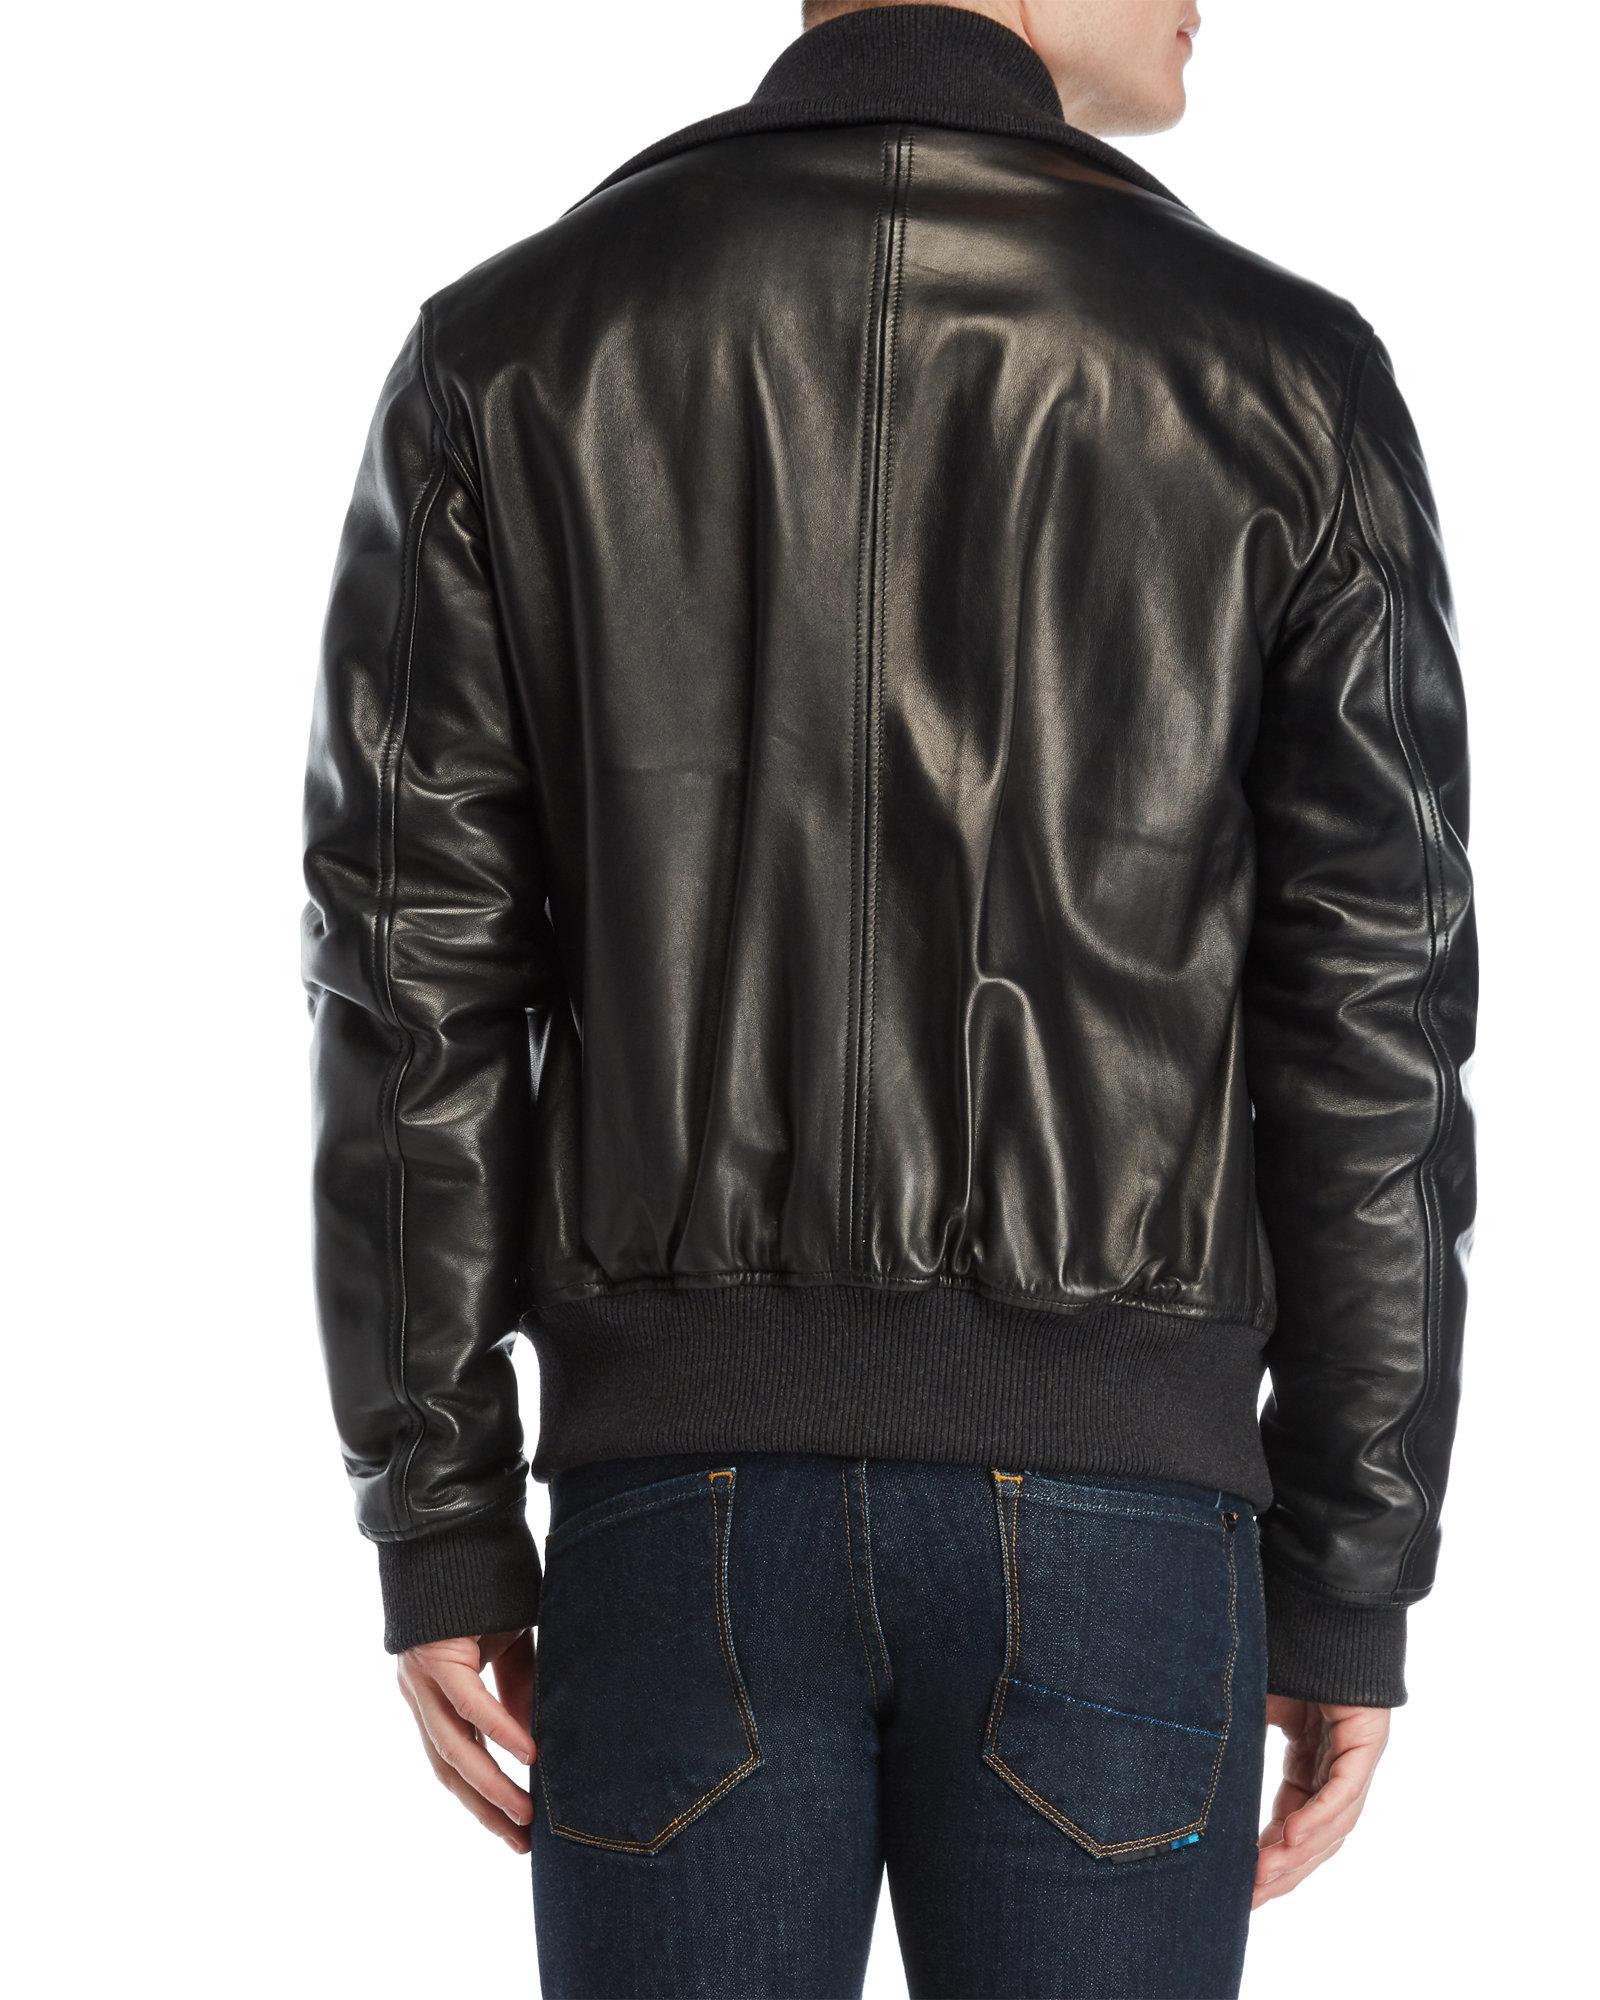 Dolce & Gabbana Fleece-lined Leather Flight Jacket in Black for Men - Lyst